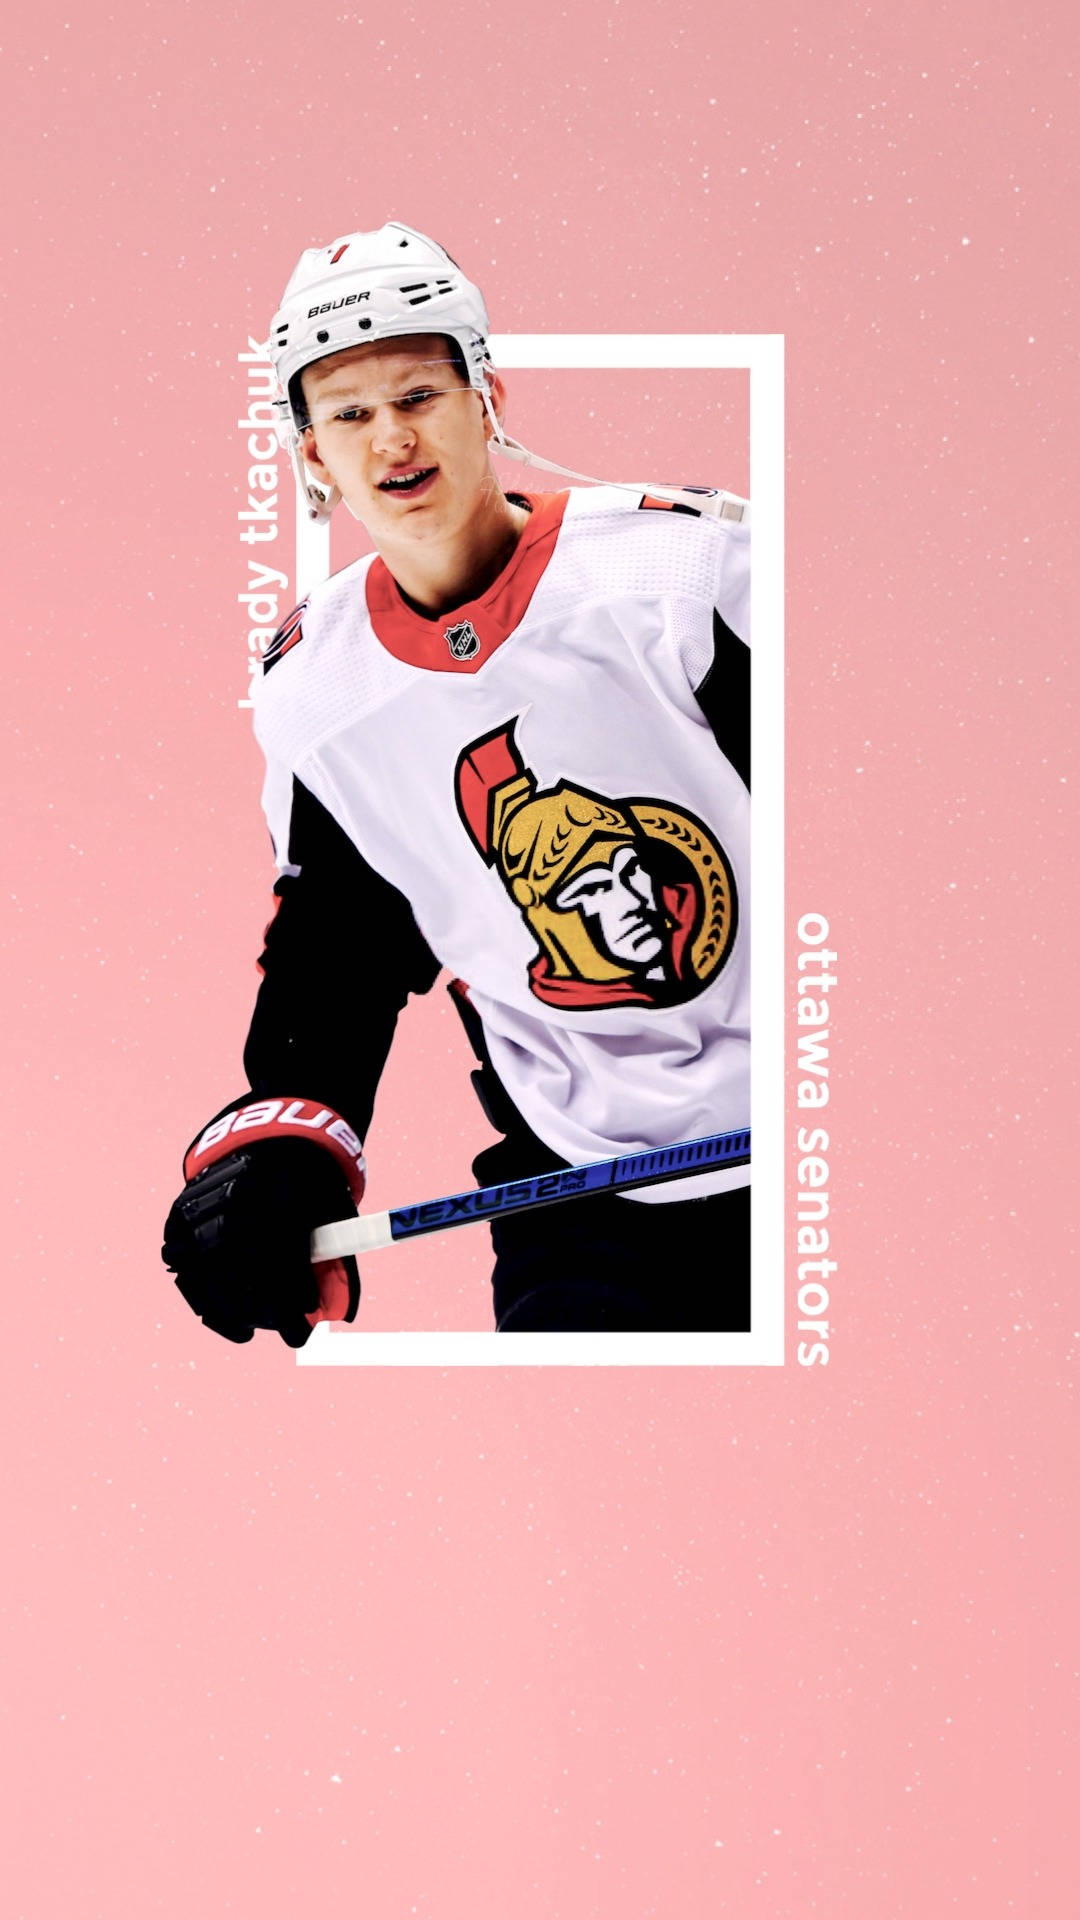 Giocatorestella Degli Ottawa Senators, Brady Tkachuk, In Un'immagine Fanart Vivace Rosa. Sfondo